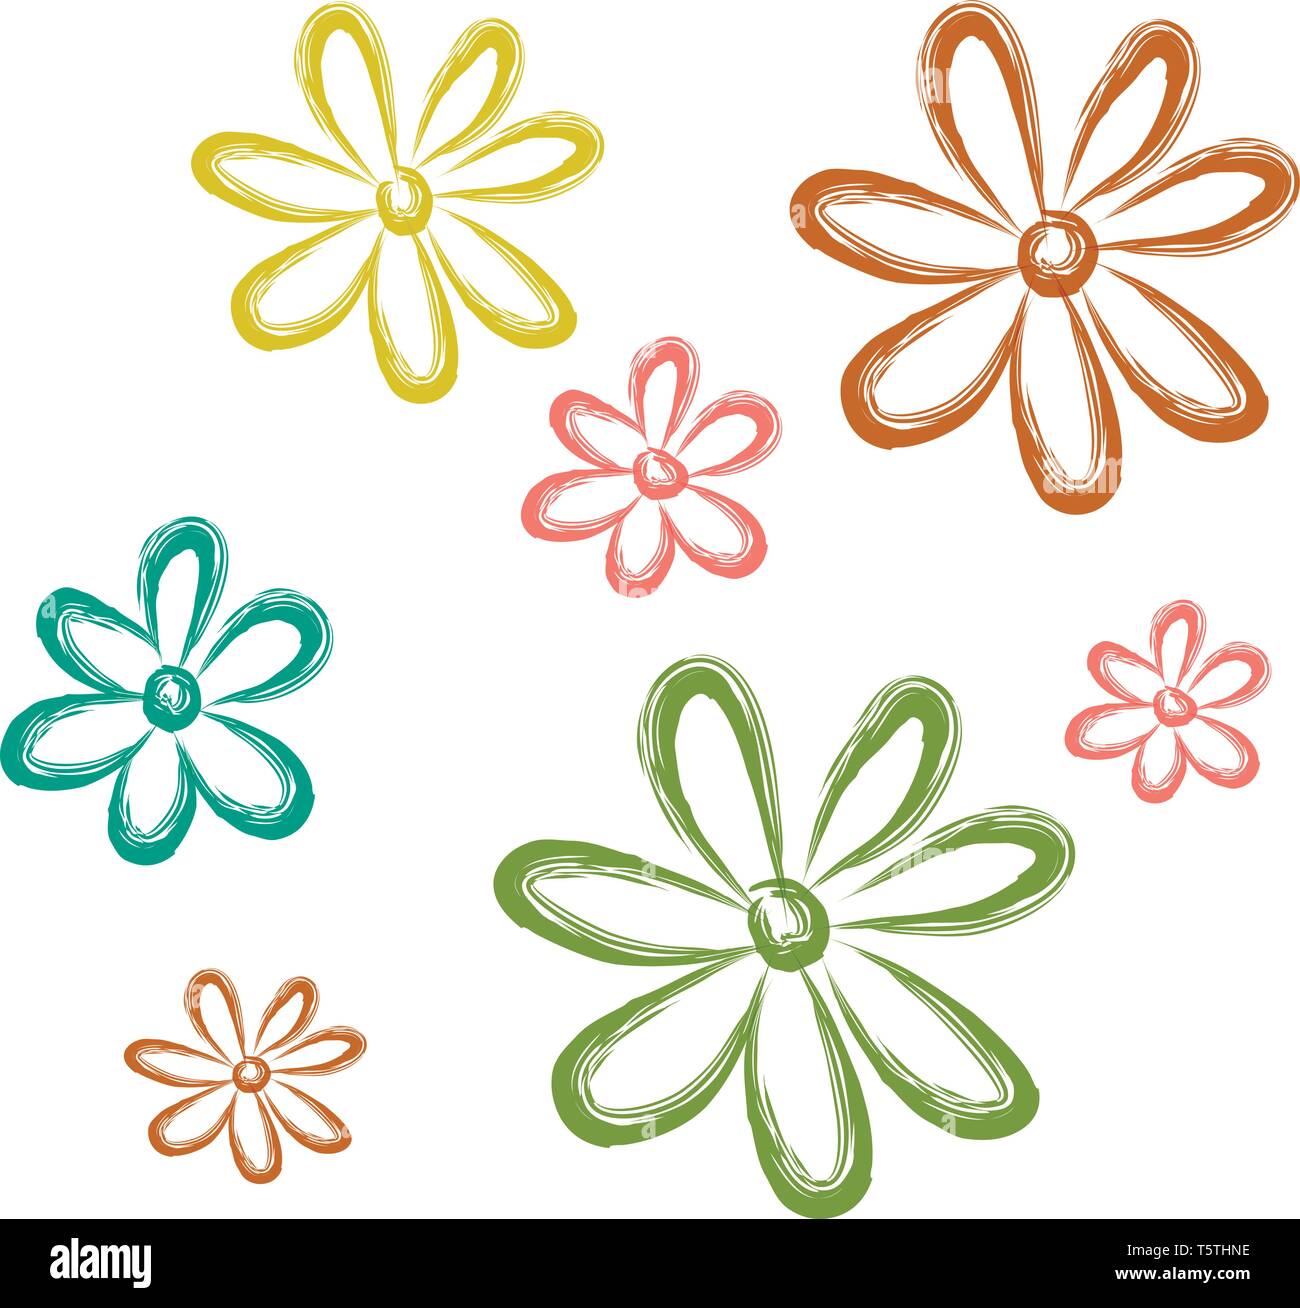 Eine Zeichnung von Aster Blüten in verschiedenen Farben: gelb, grün und rot vector Farbe, Zeichnung oder Abbildung Stock Vektor